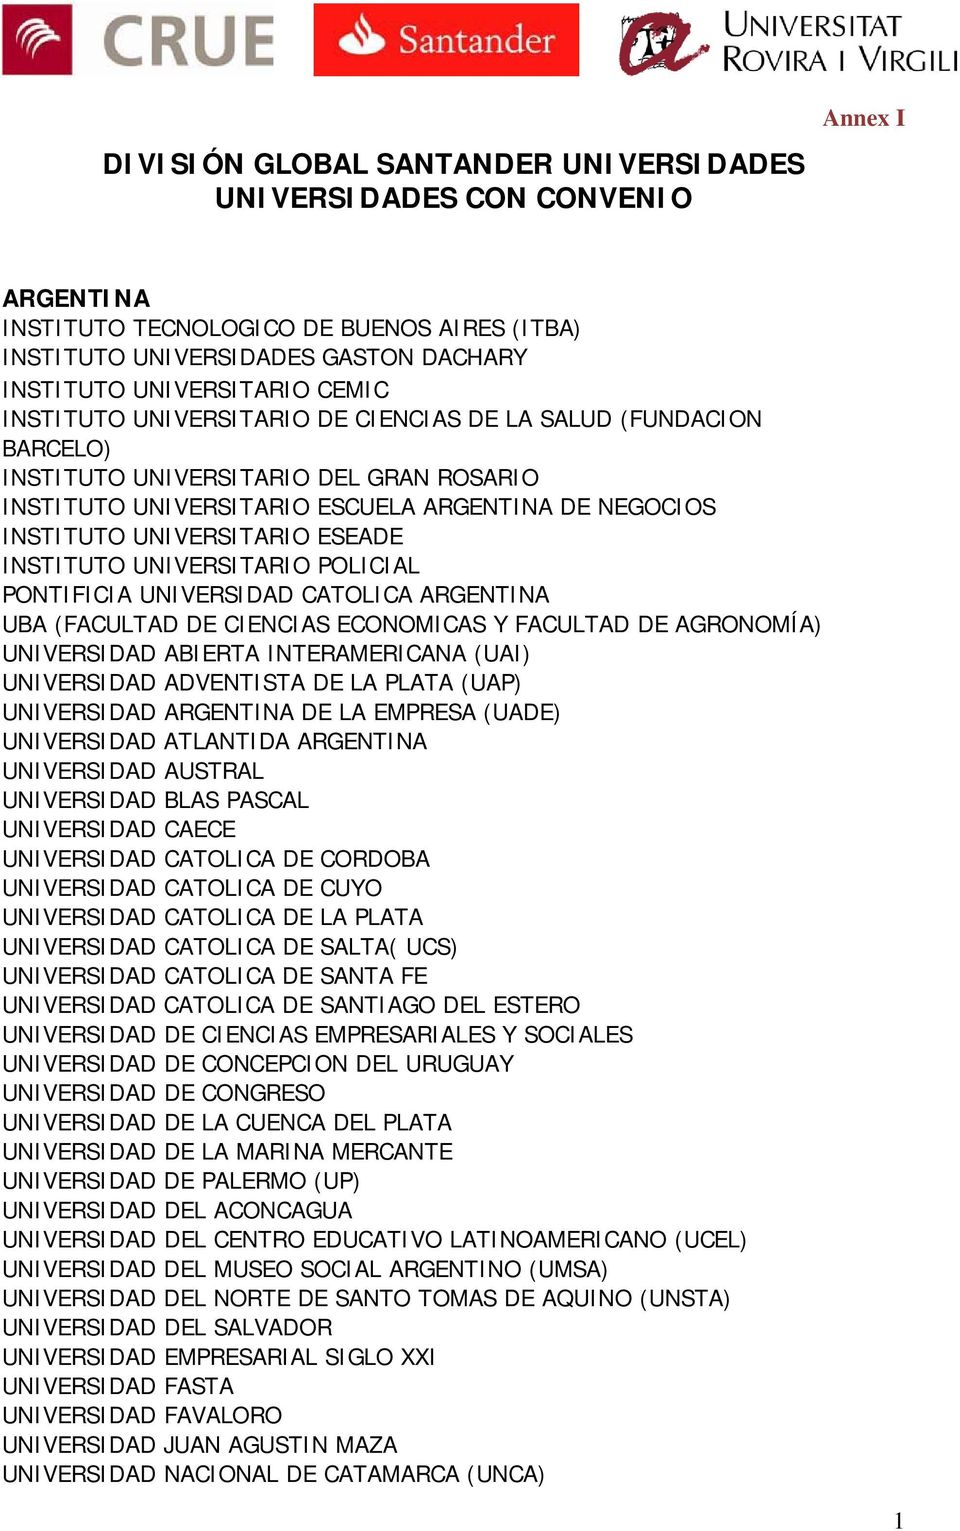 INSTITUTO UNIVERSITARIO POLICIAL PONTIFICIA UNIVERSIDAD CATOLICA ARGENTINA UBA (FACULTAD DE CIENCIAS ECONOMICAS Y FACULTAD DE AGRONOMÍA) UNIVERSIDAD ABIERTA INTERAMERICANA (UAI) UNIVERSIDAD